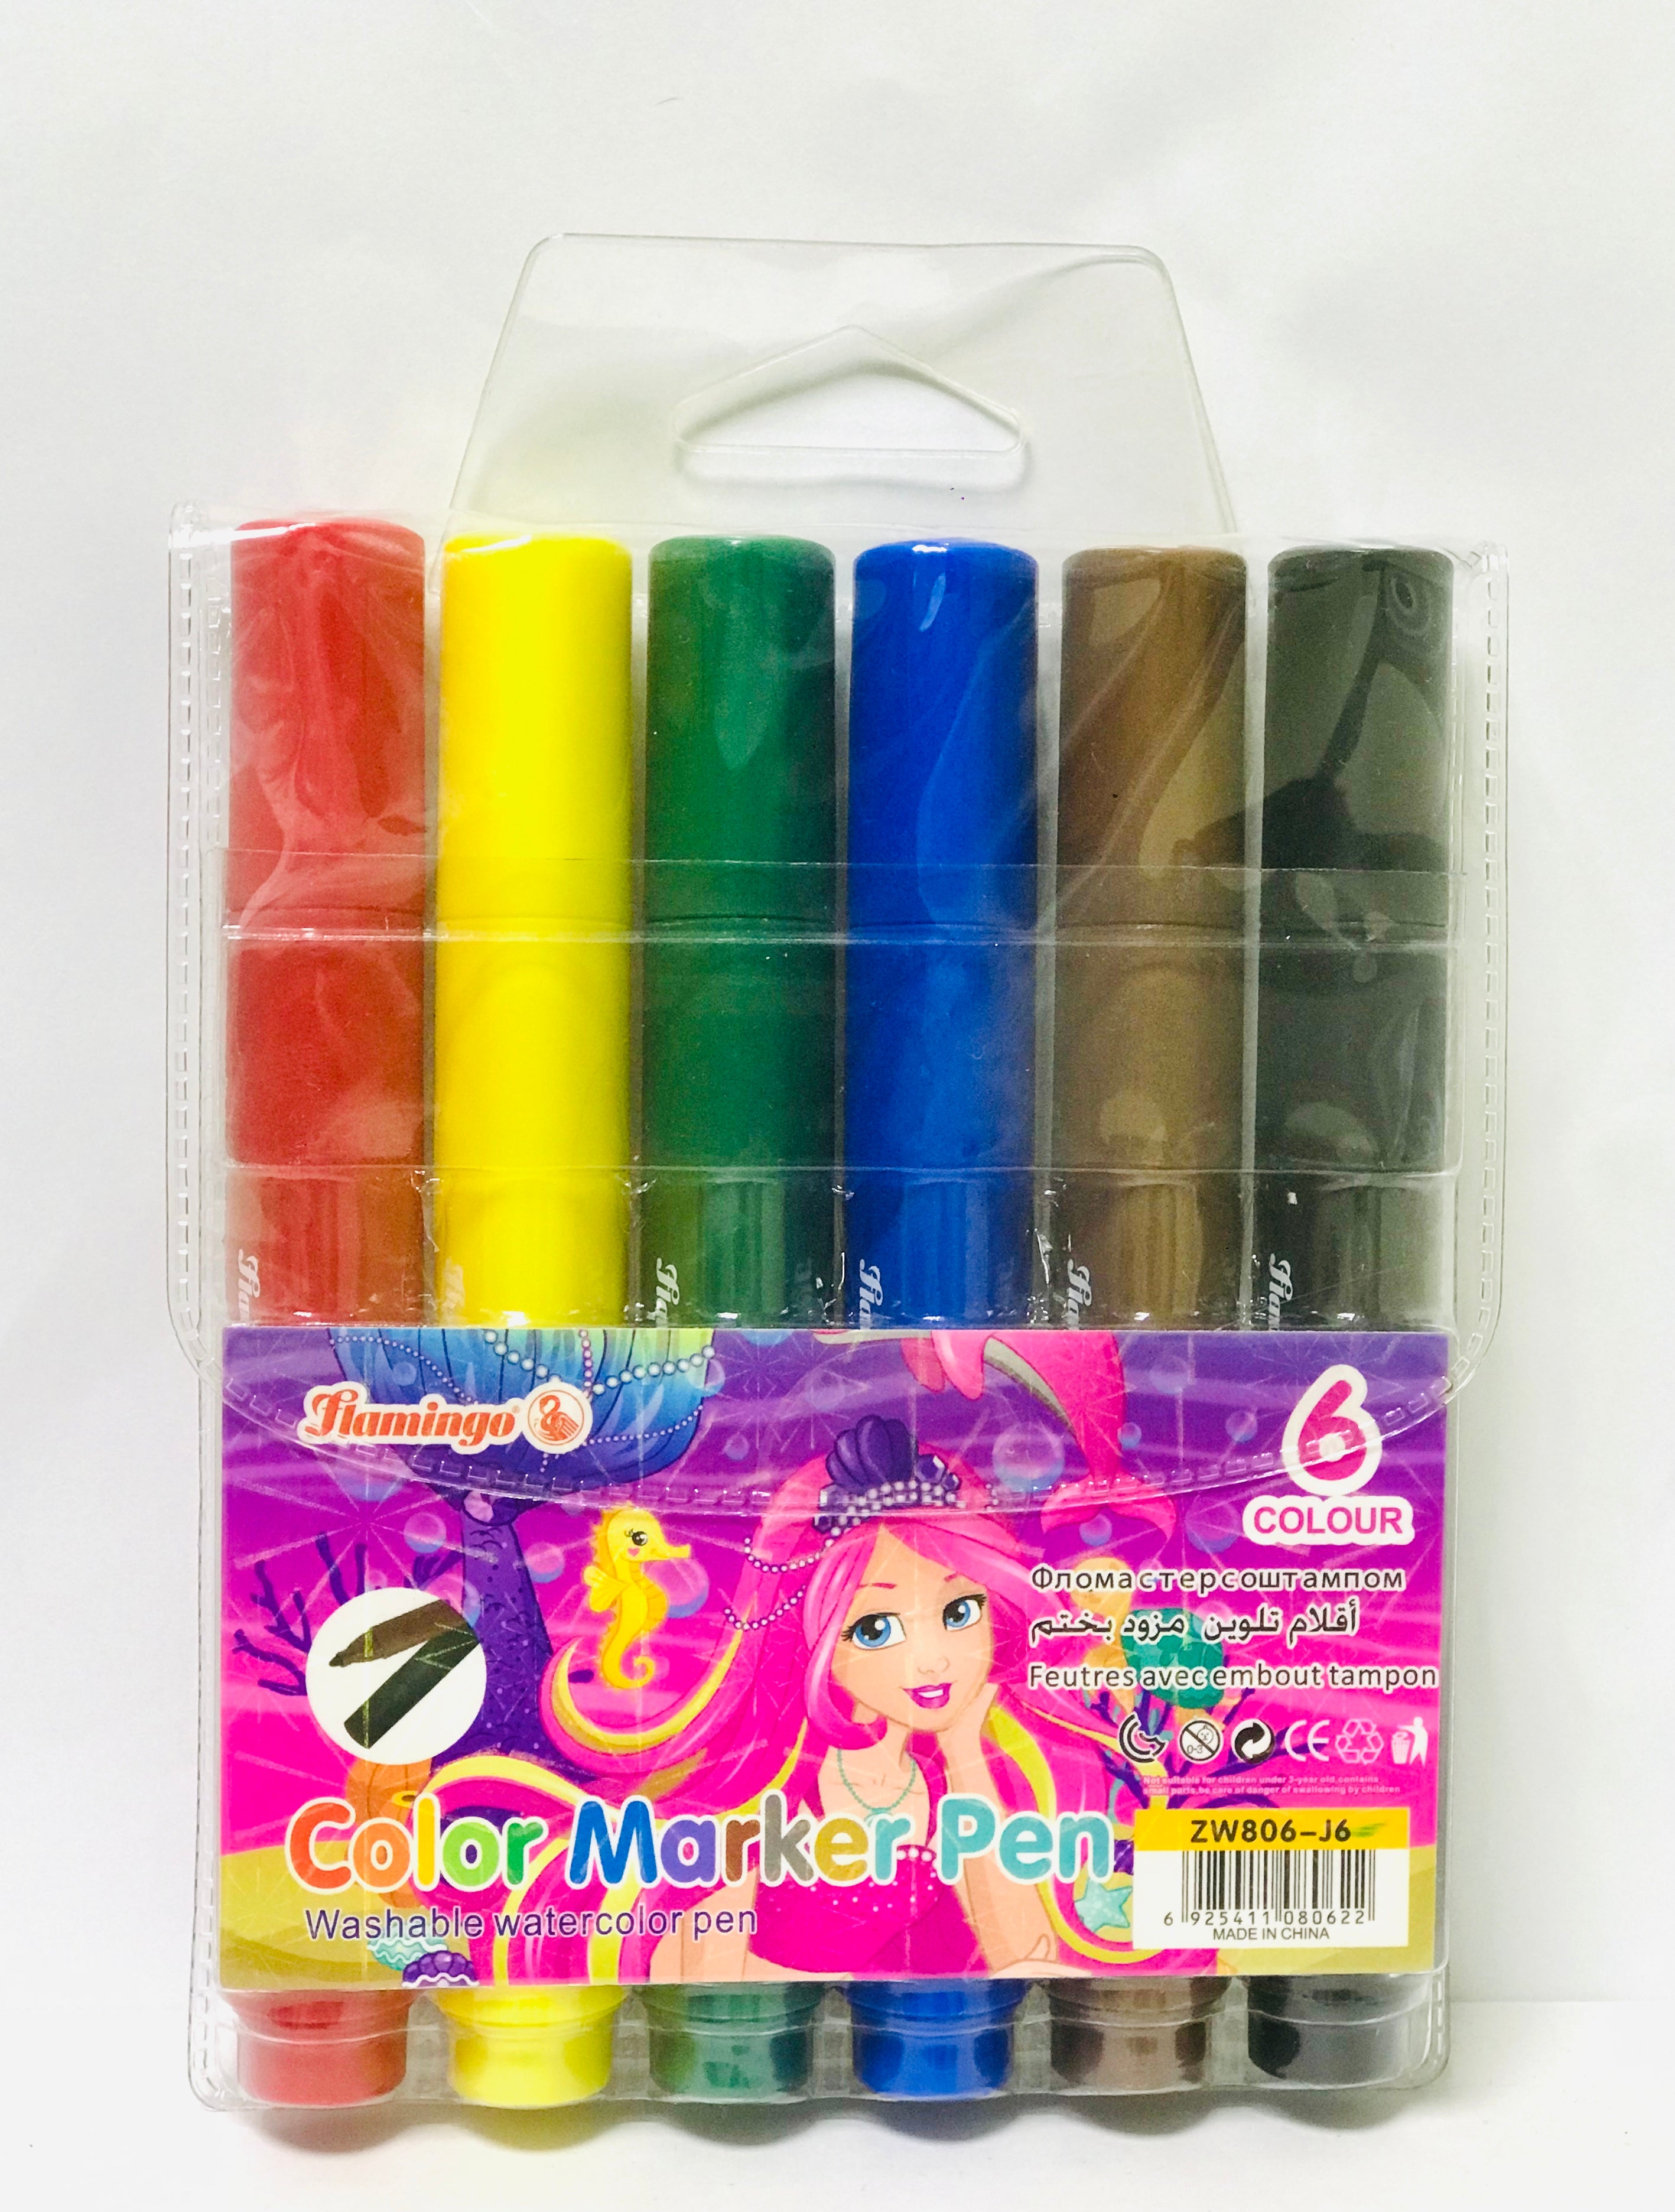 Pentel Color Pen Set - Assorted Colors, Set of 12